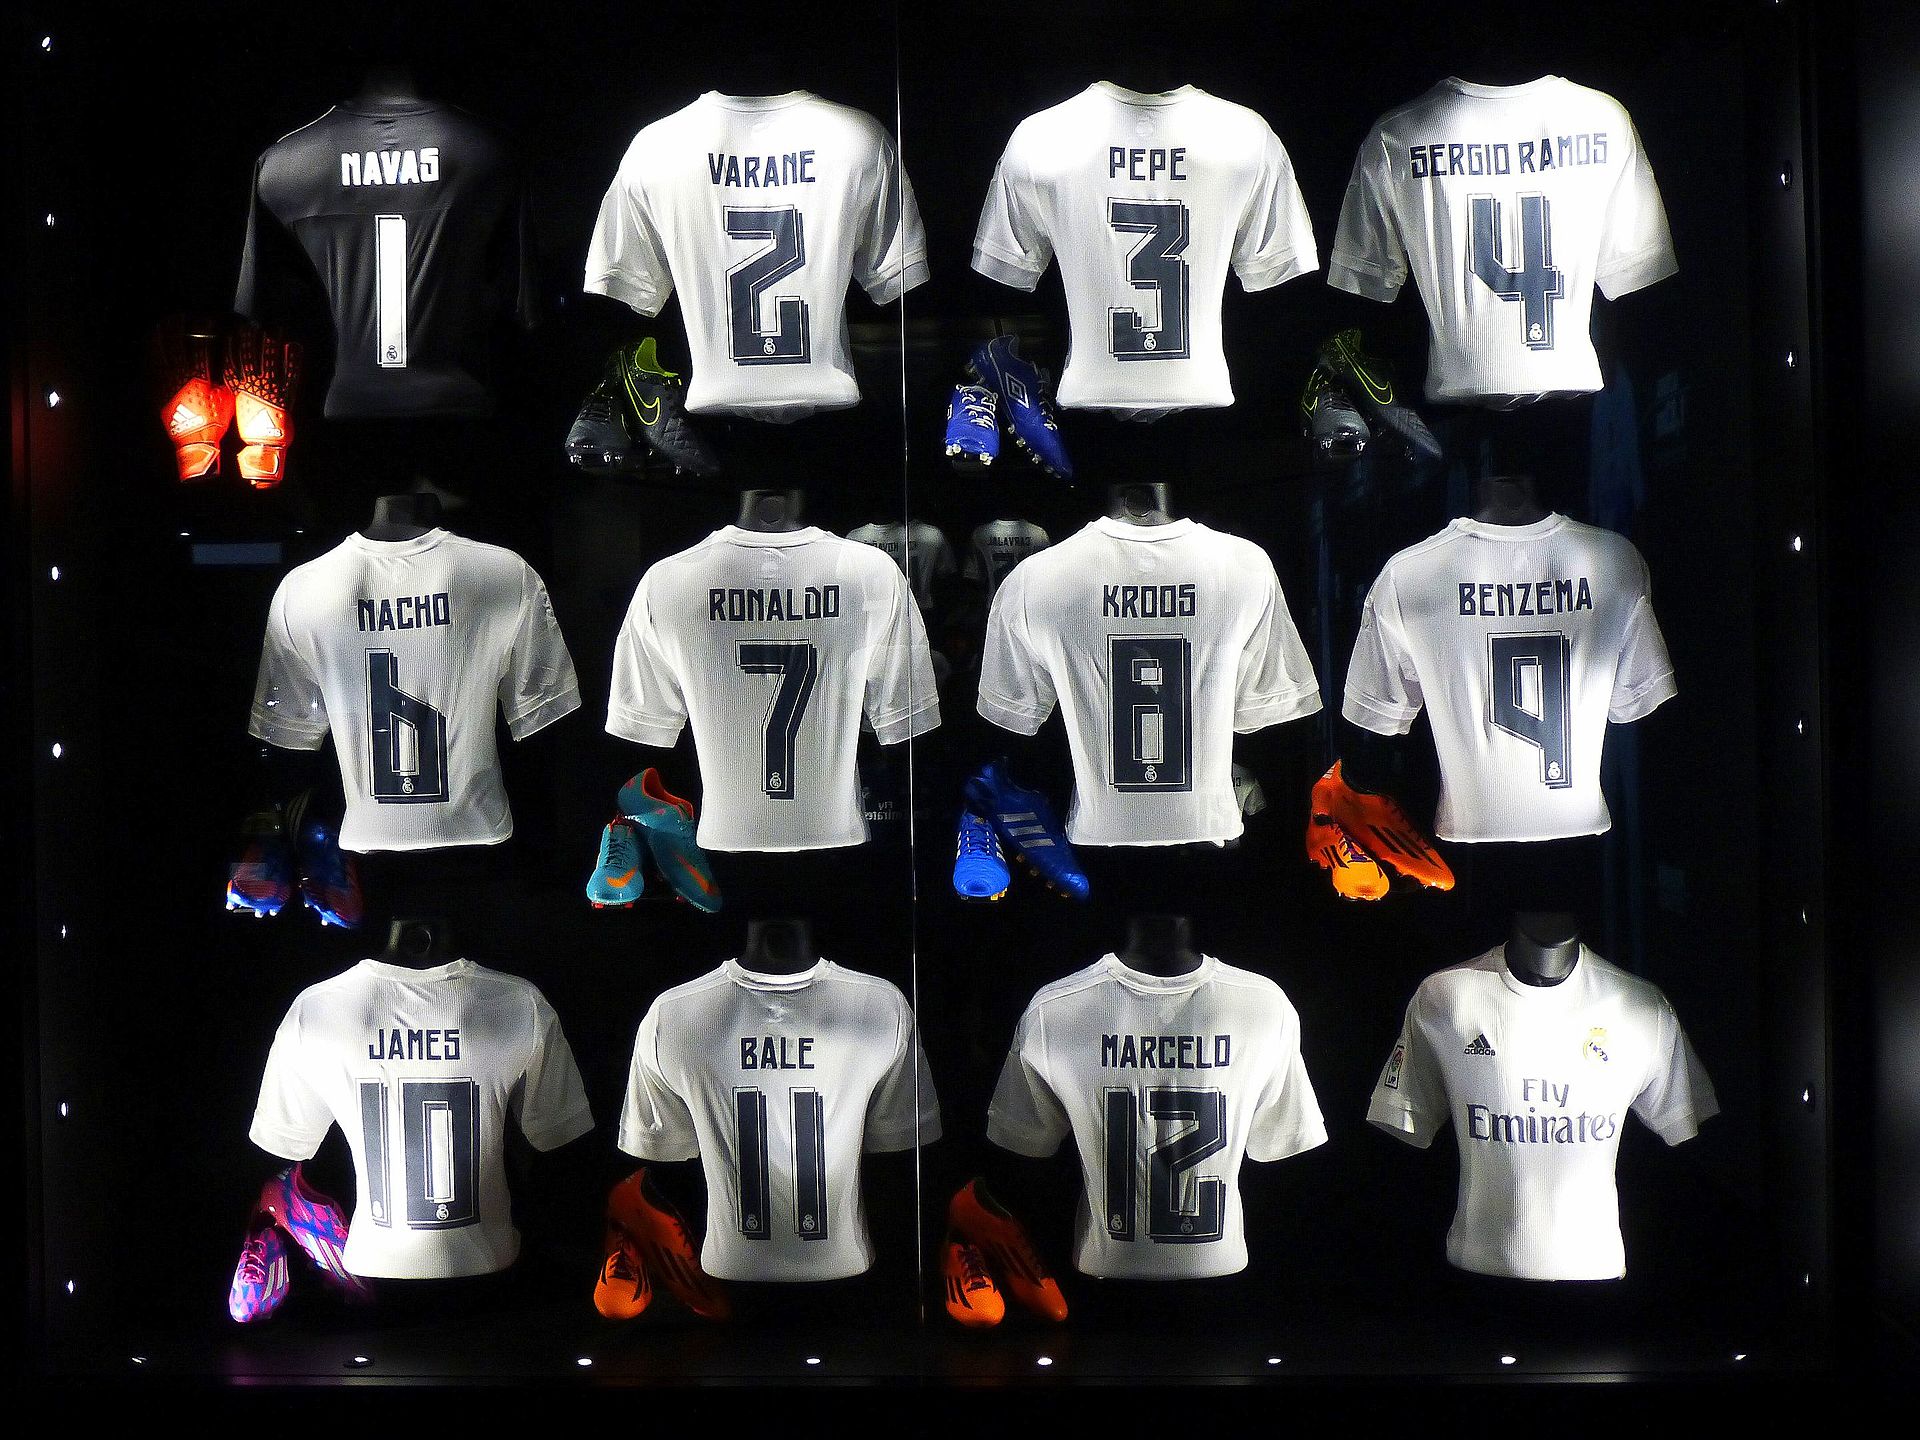 Mau ao mua 2015-16 cua Real do Adidas tai tro